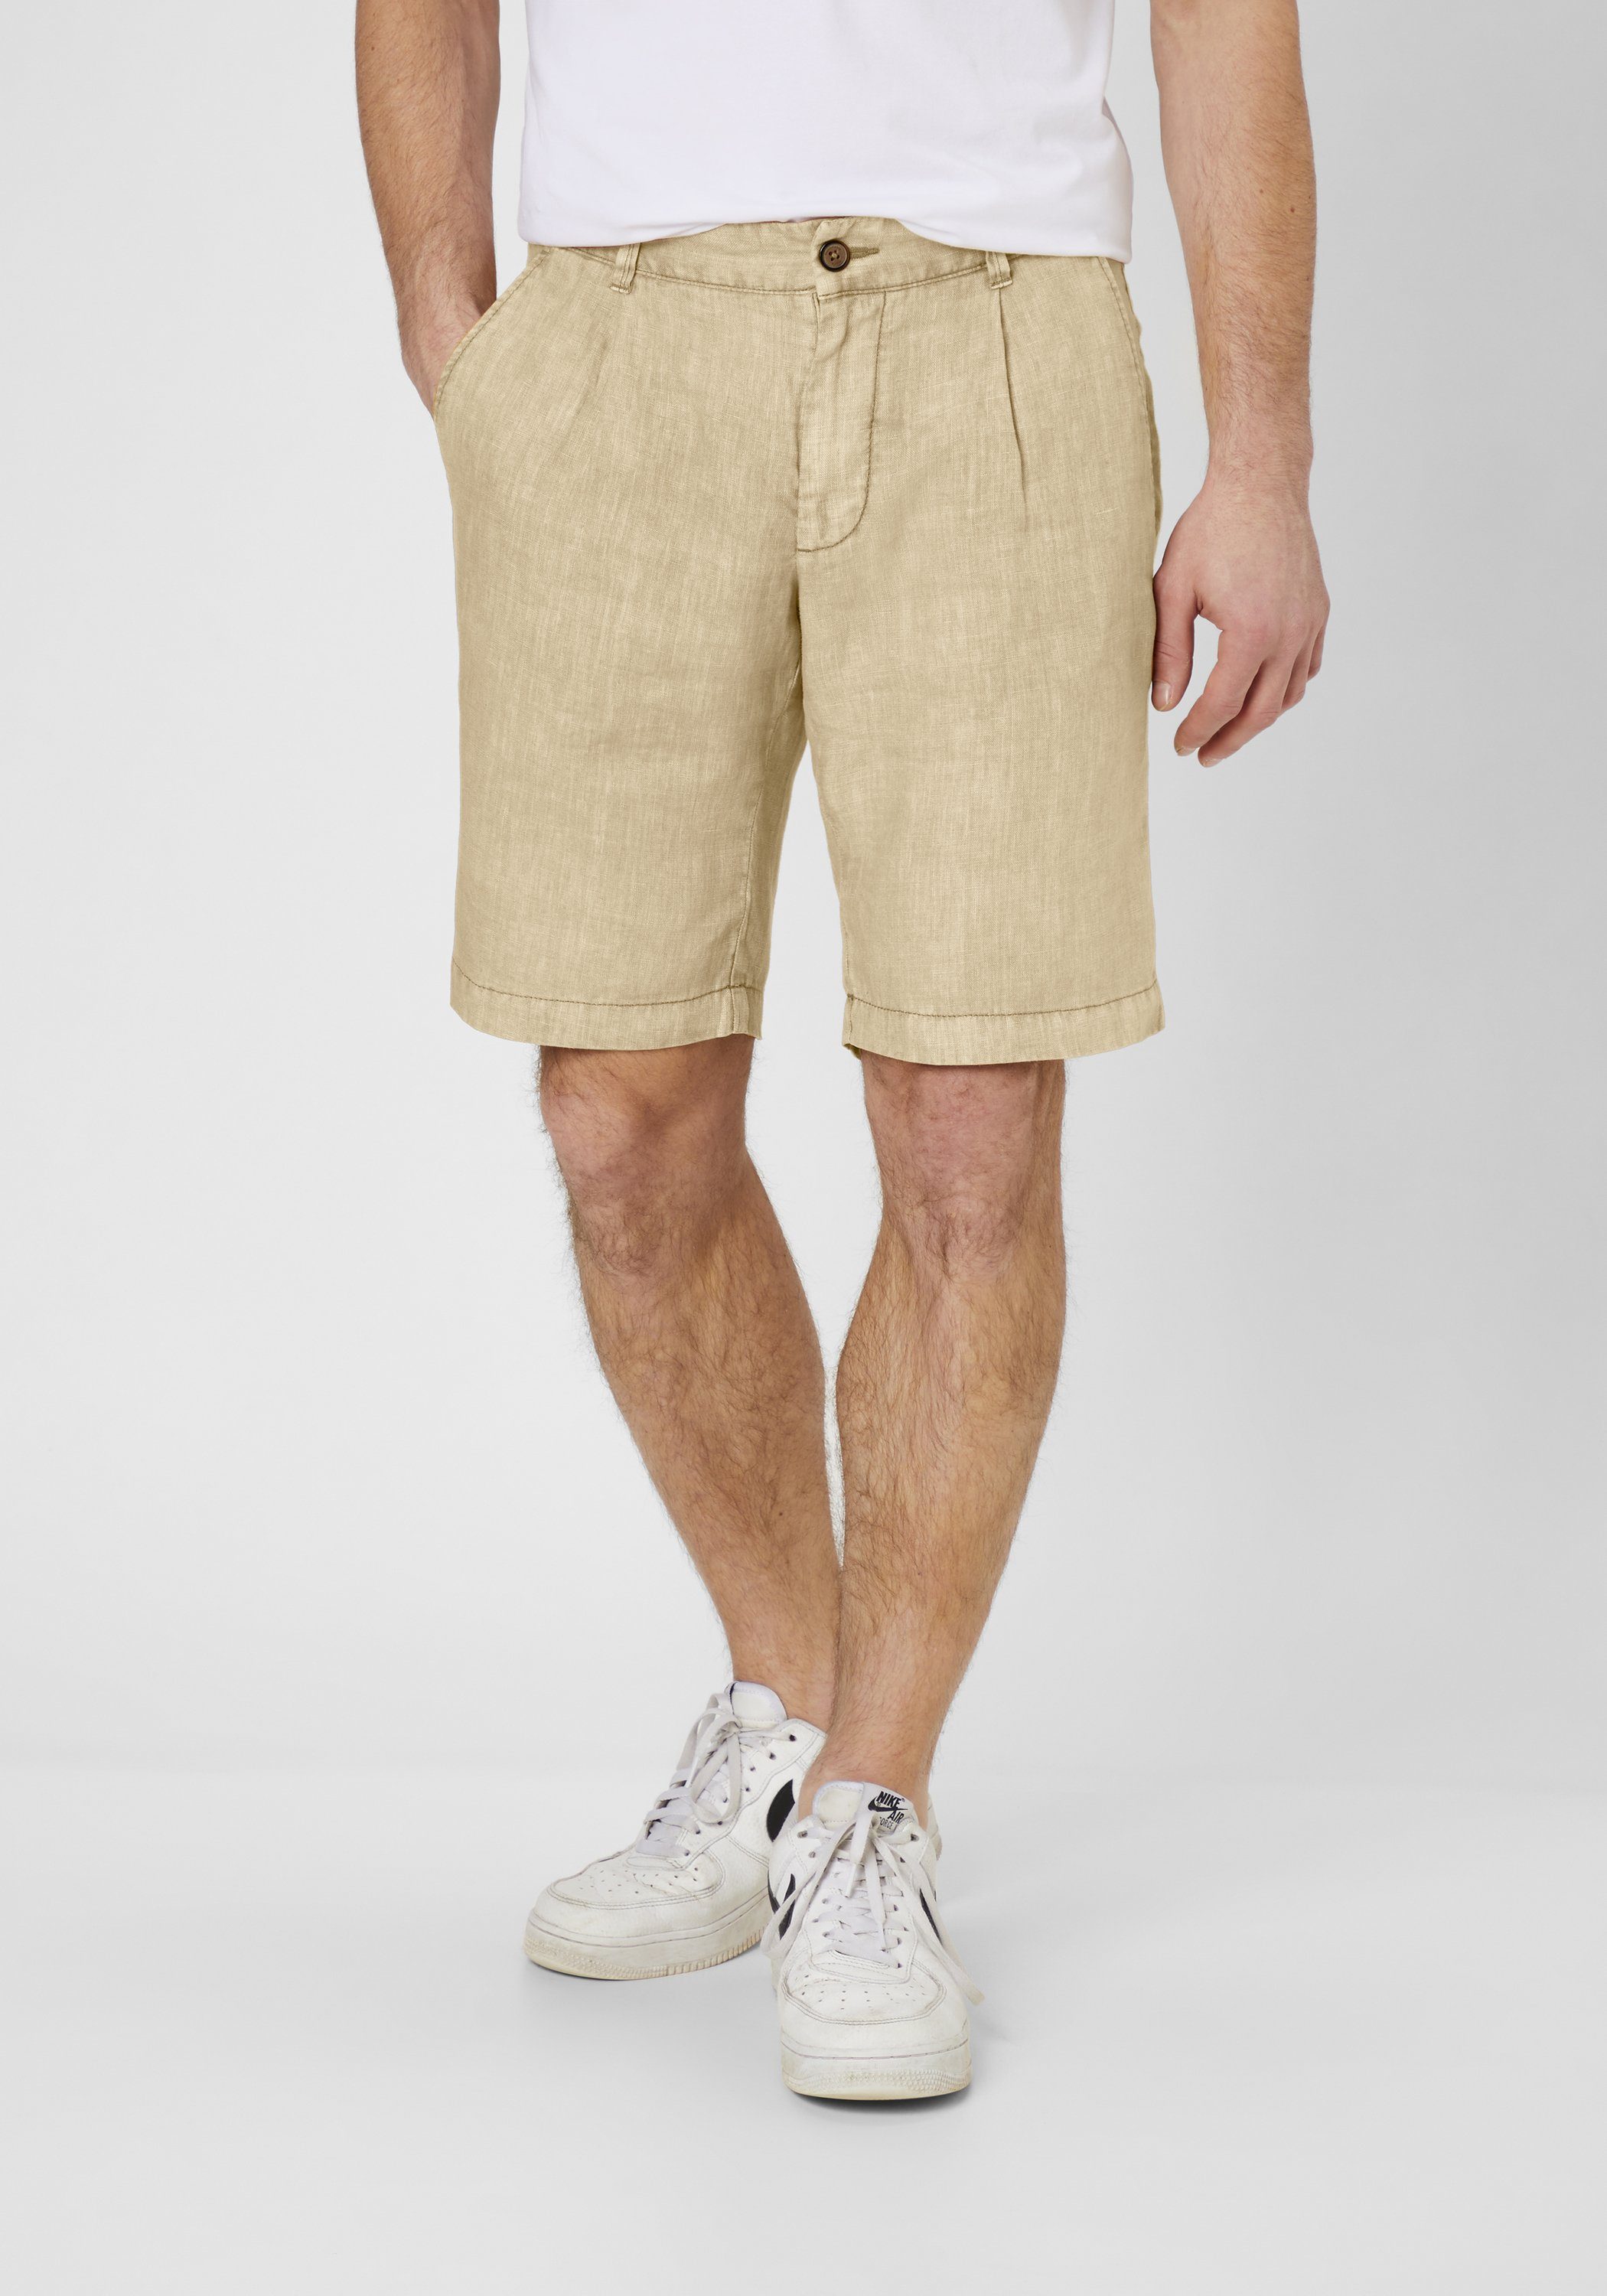 S4 Jackets aus Modern Leichte 2 Shorts Fit Bermudas MAUI Leinen straw